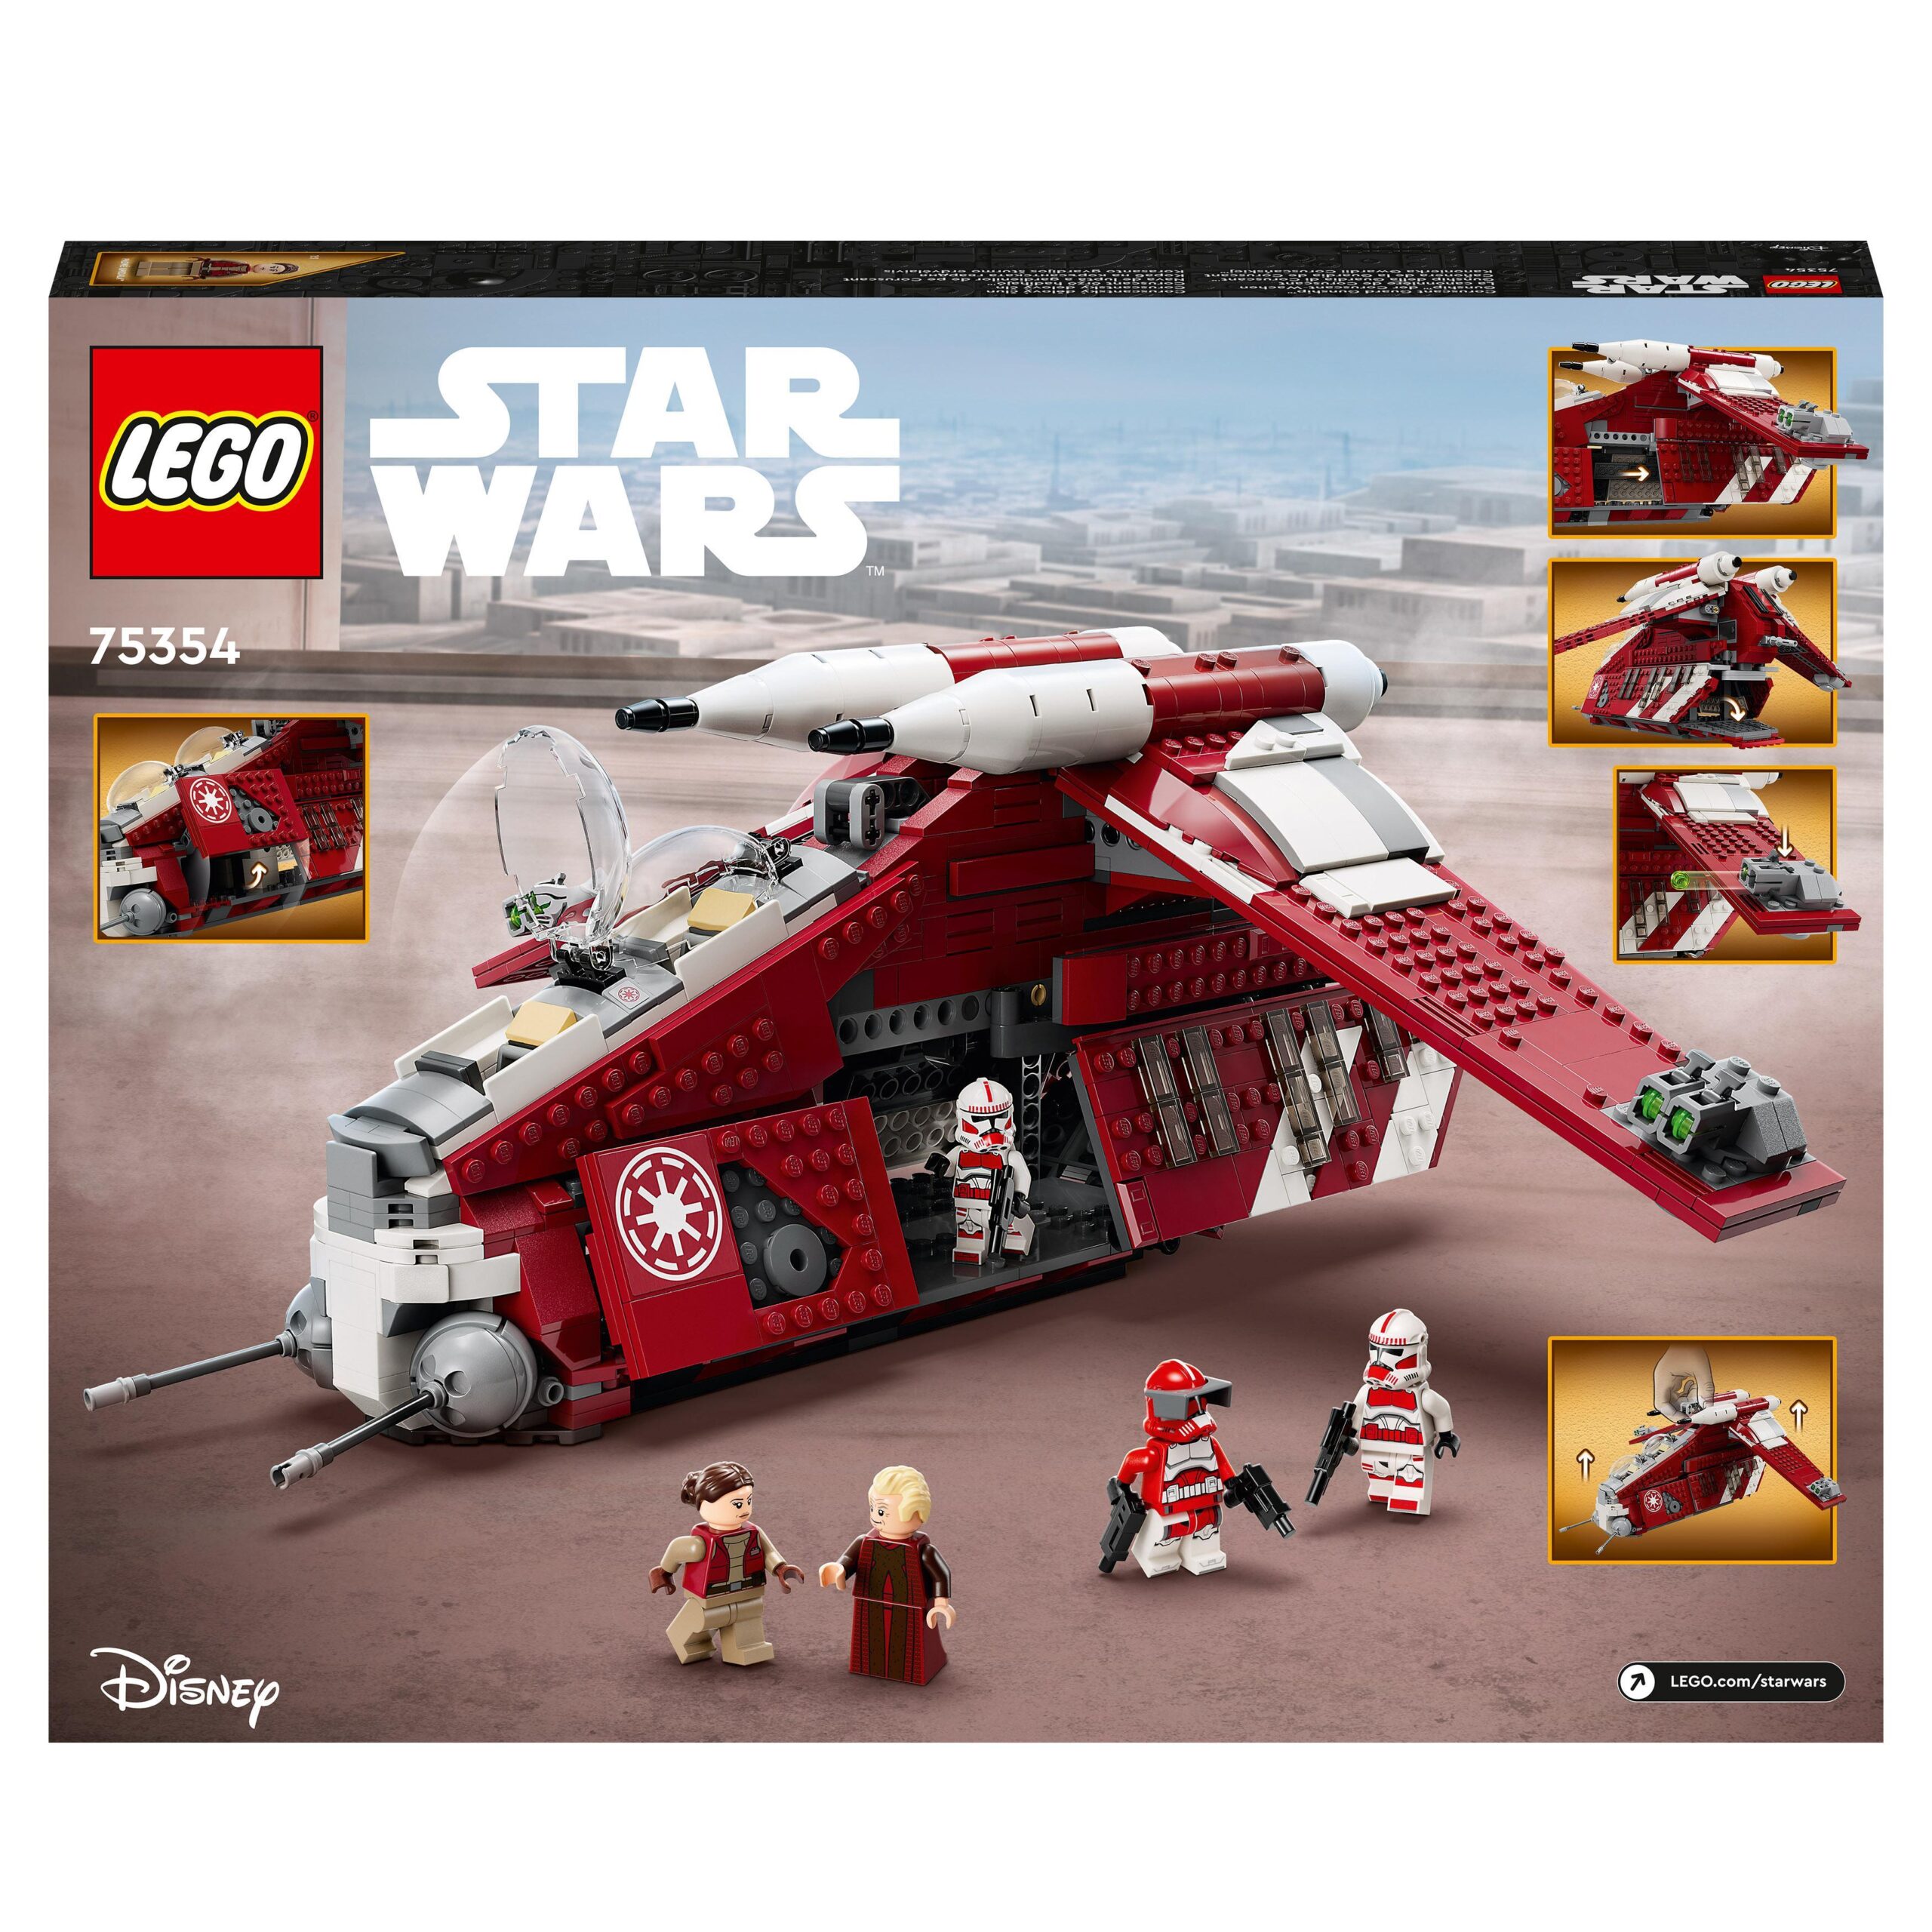 Lego star wars 75354 gunship della guardia di coruscant, set da le guerre dei cloni con veicolo giocattolo e 5 minifigure - LEGO® Star Wars™, Star Wars